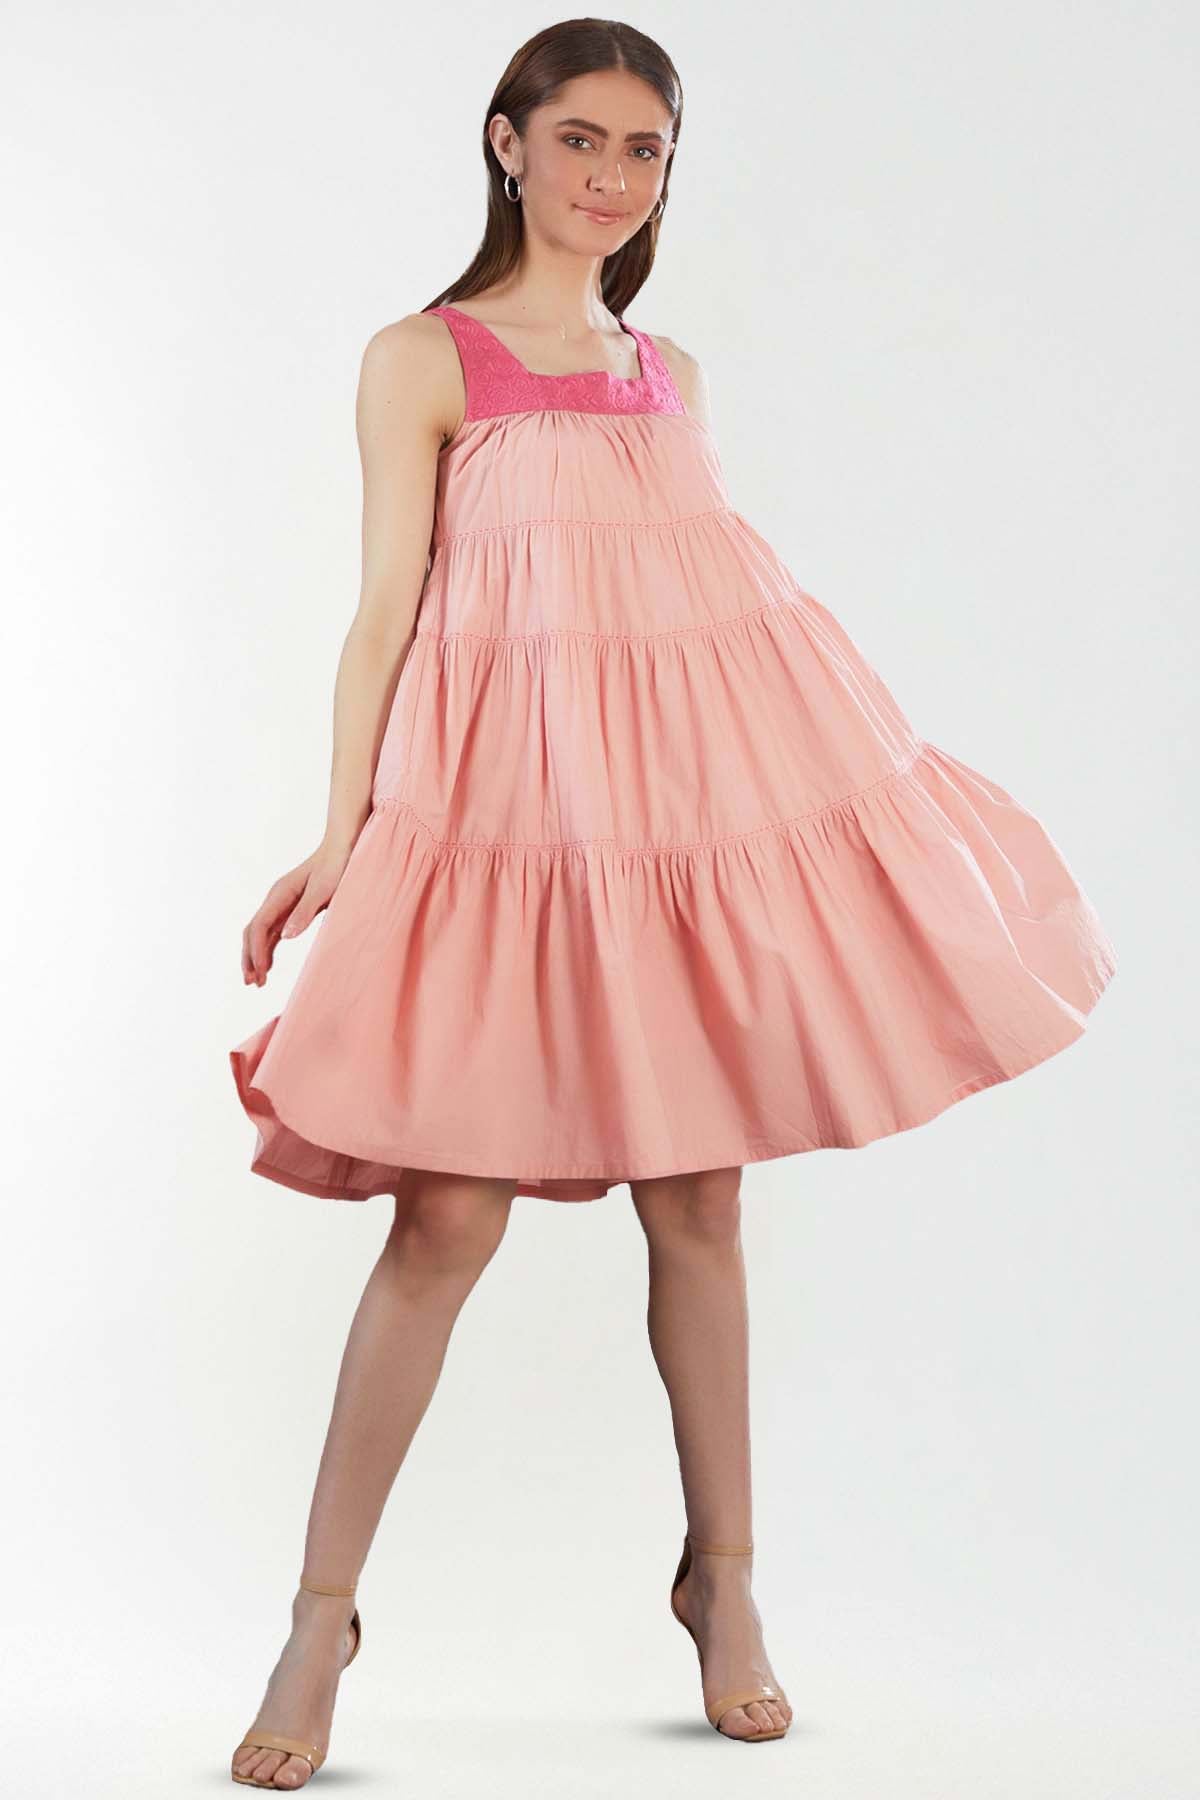 Blush Layered Mini Dress